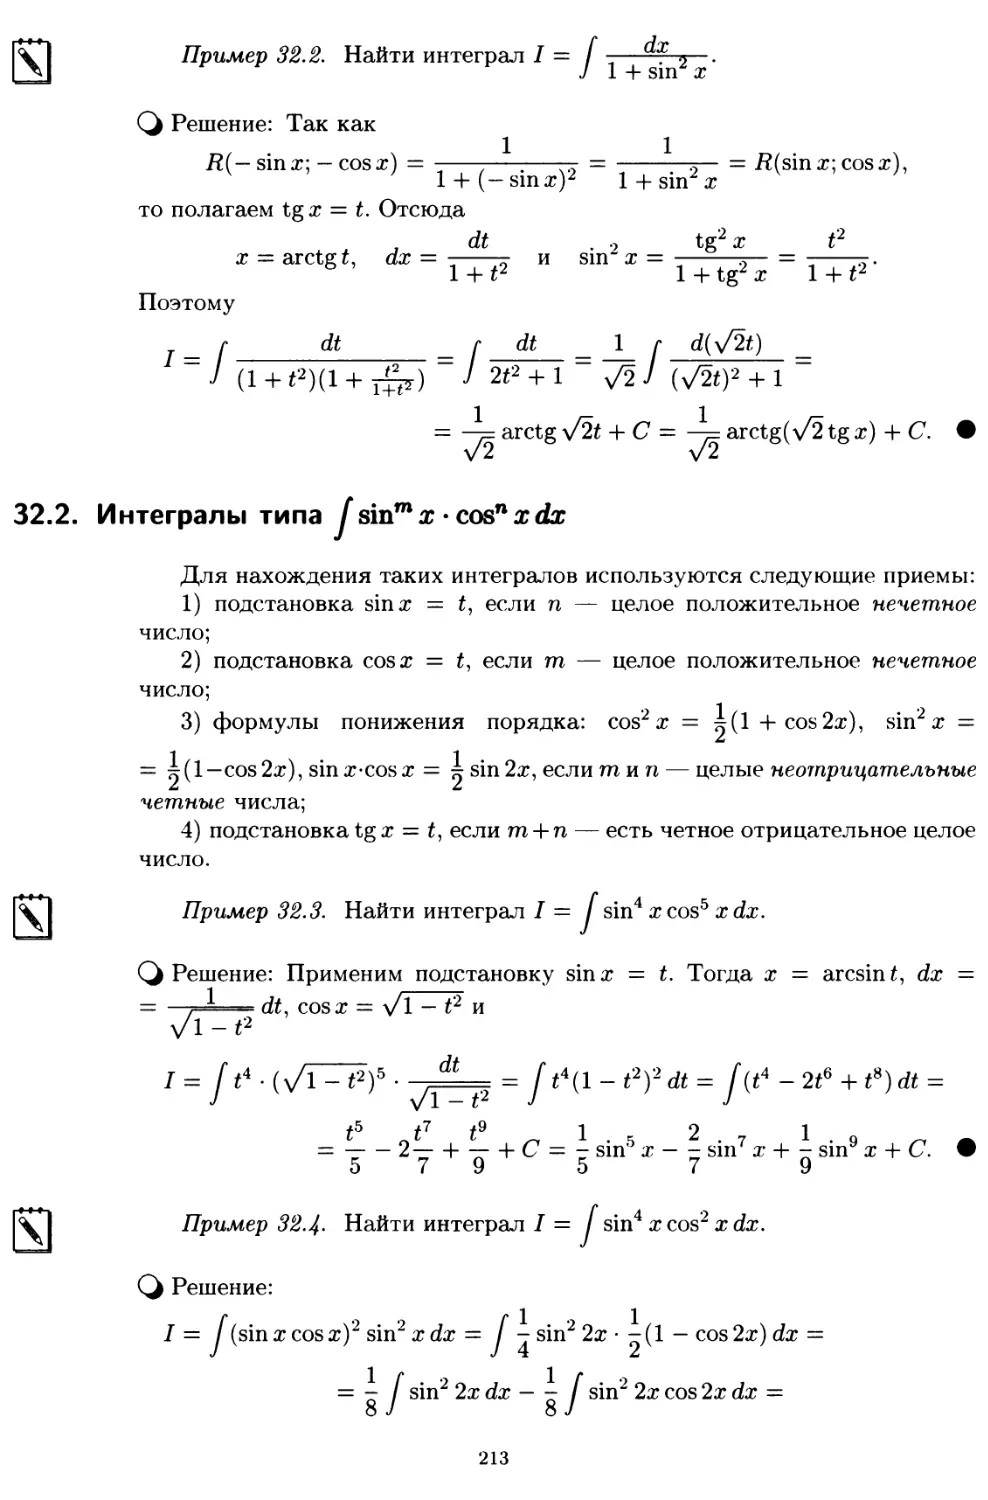 32.2. Интегралы типа sin^m x • cos^n x dx